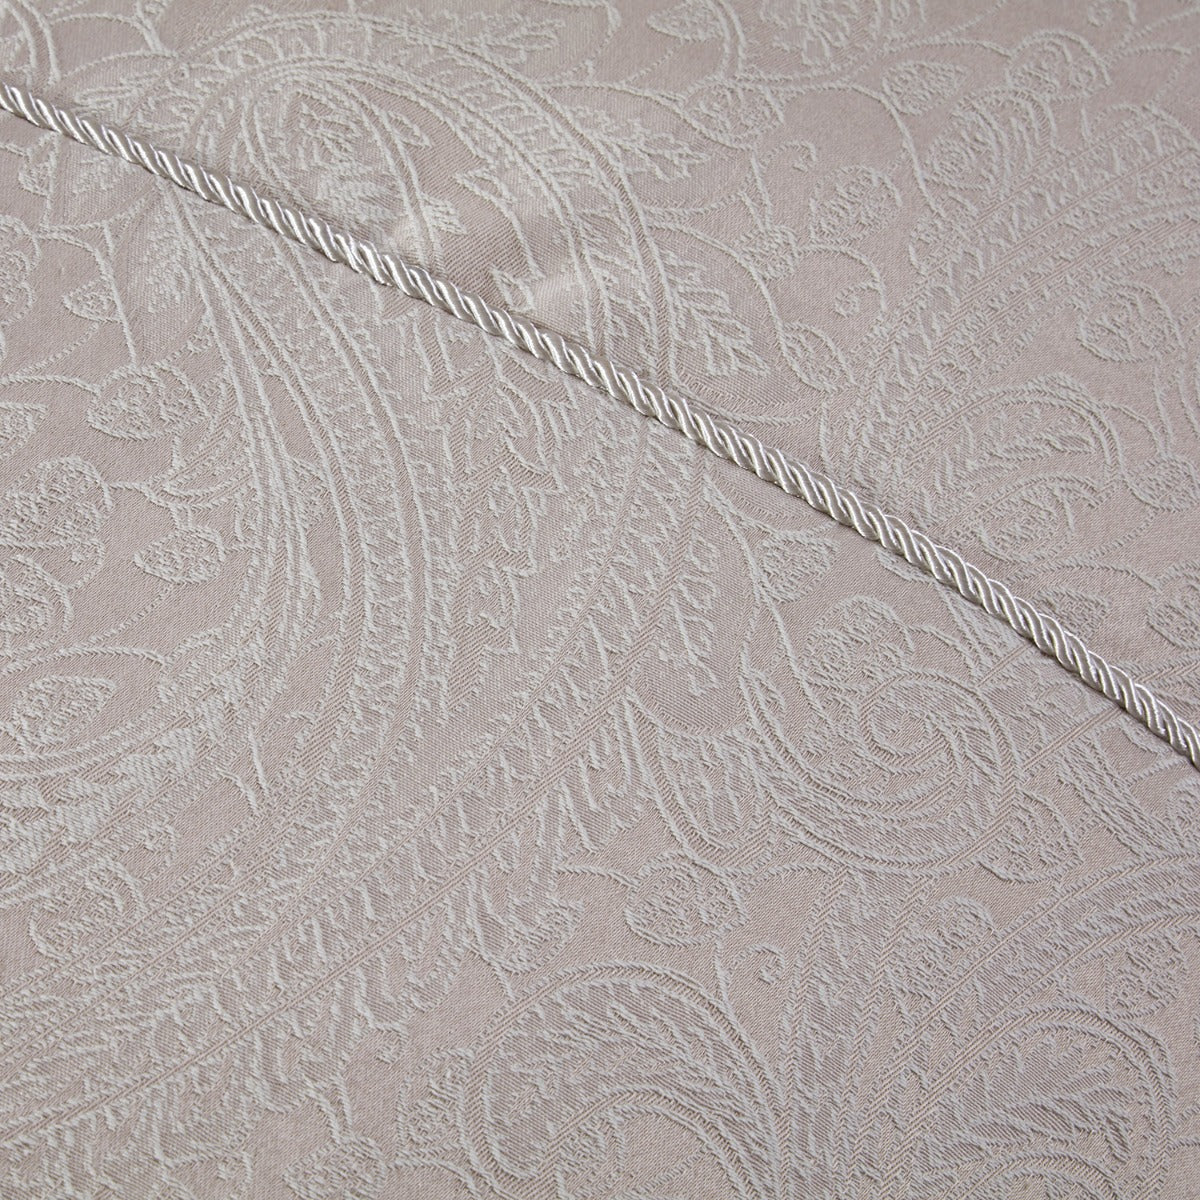 Paisley Natural Luxury Cotton Rich Jacquard Duvet Cover